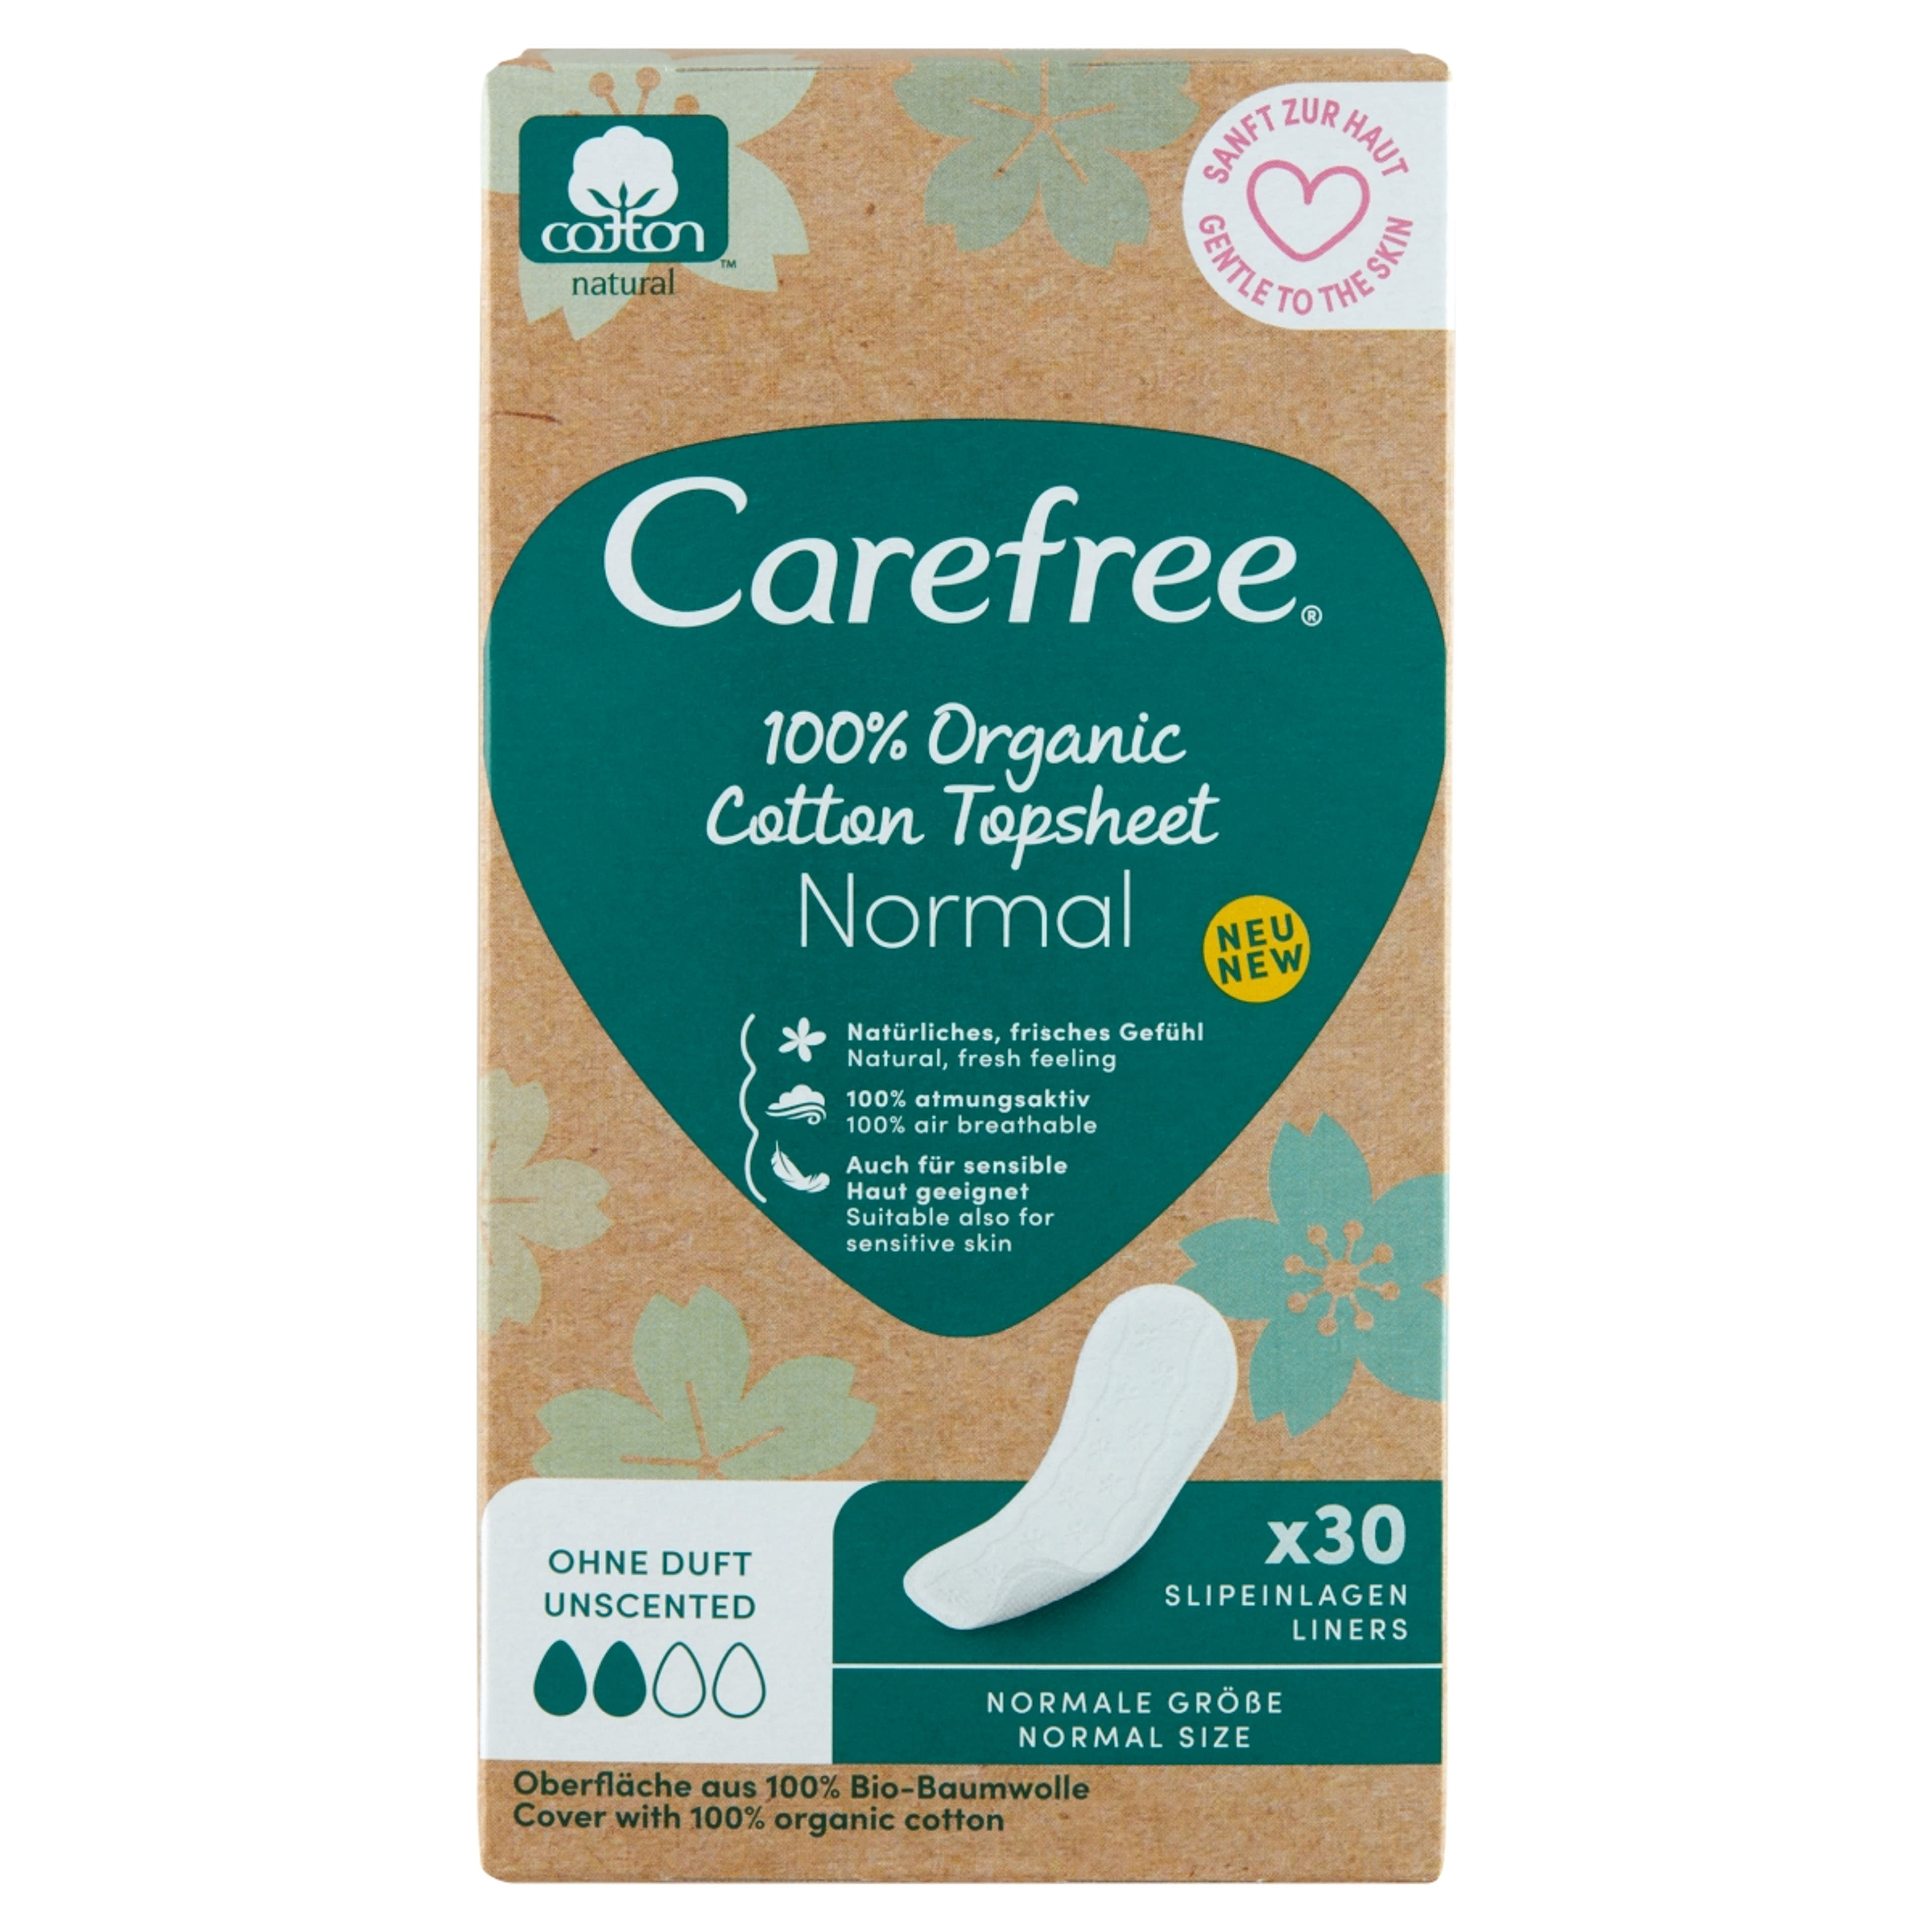 Carefree 100% Organic Cotton Topsheet Normal tisztasági betét illatmentes - 30 db